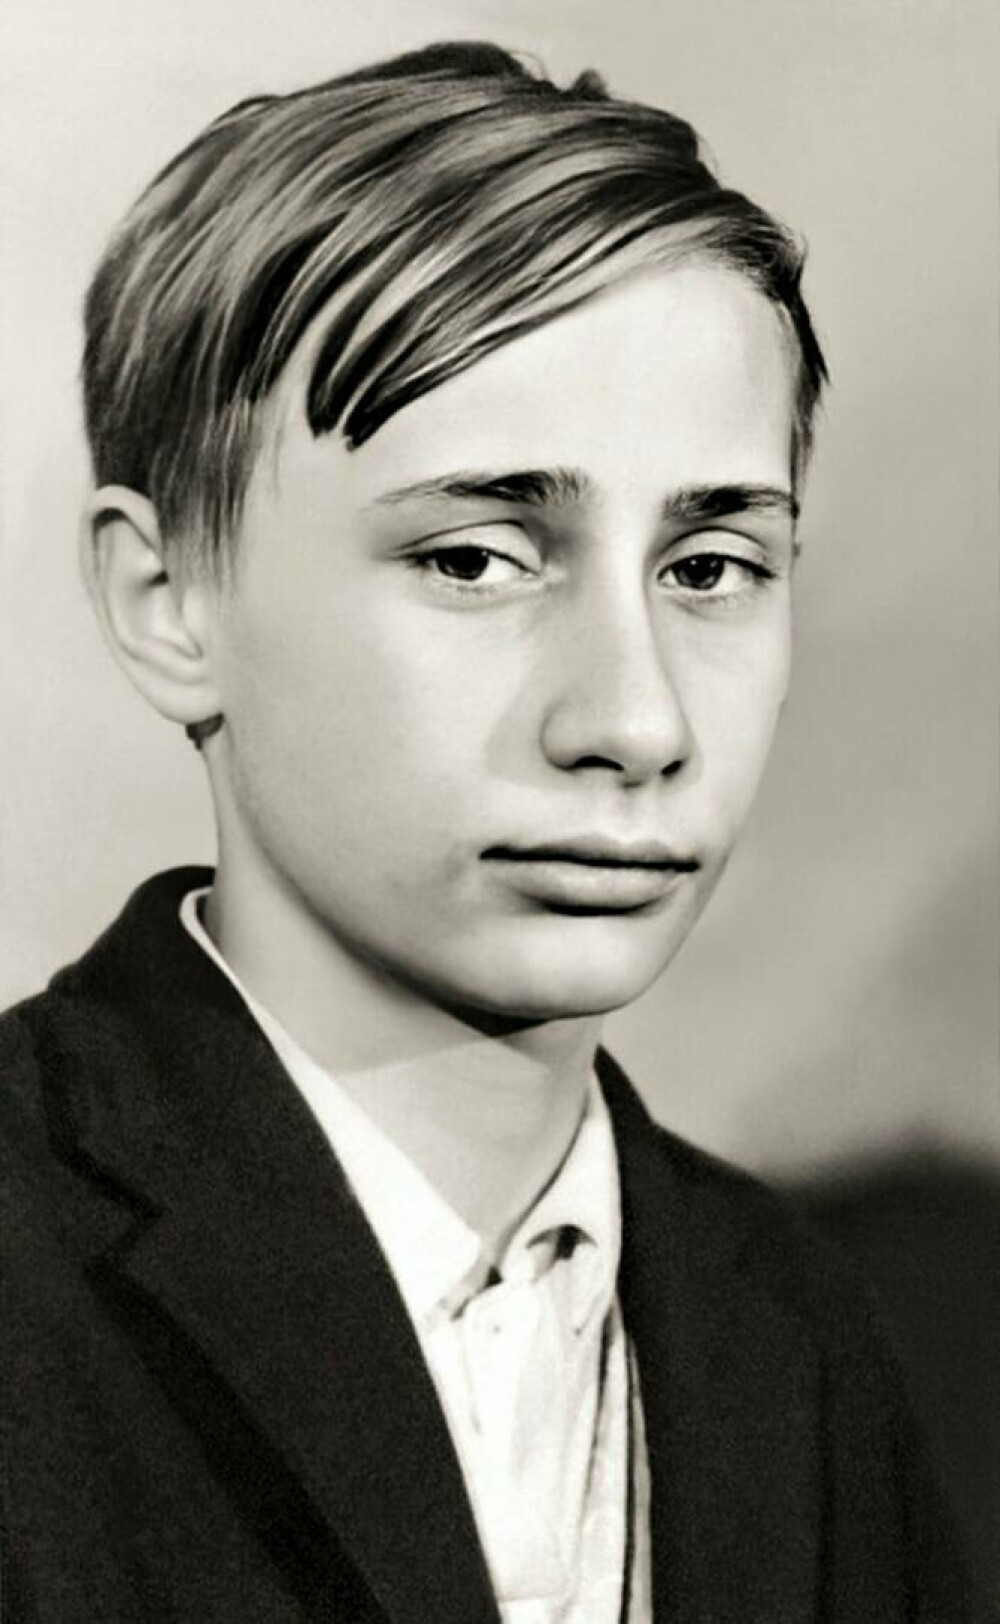 Viața lui Vladimir Putin - din tinerețe, apoi ofițer KGB și președintele care a alertat o lume întreagă - Imaginea 5